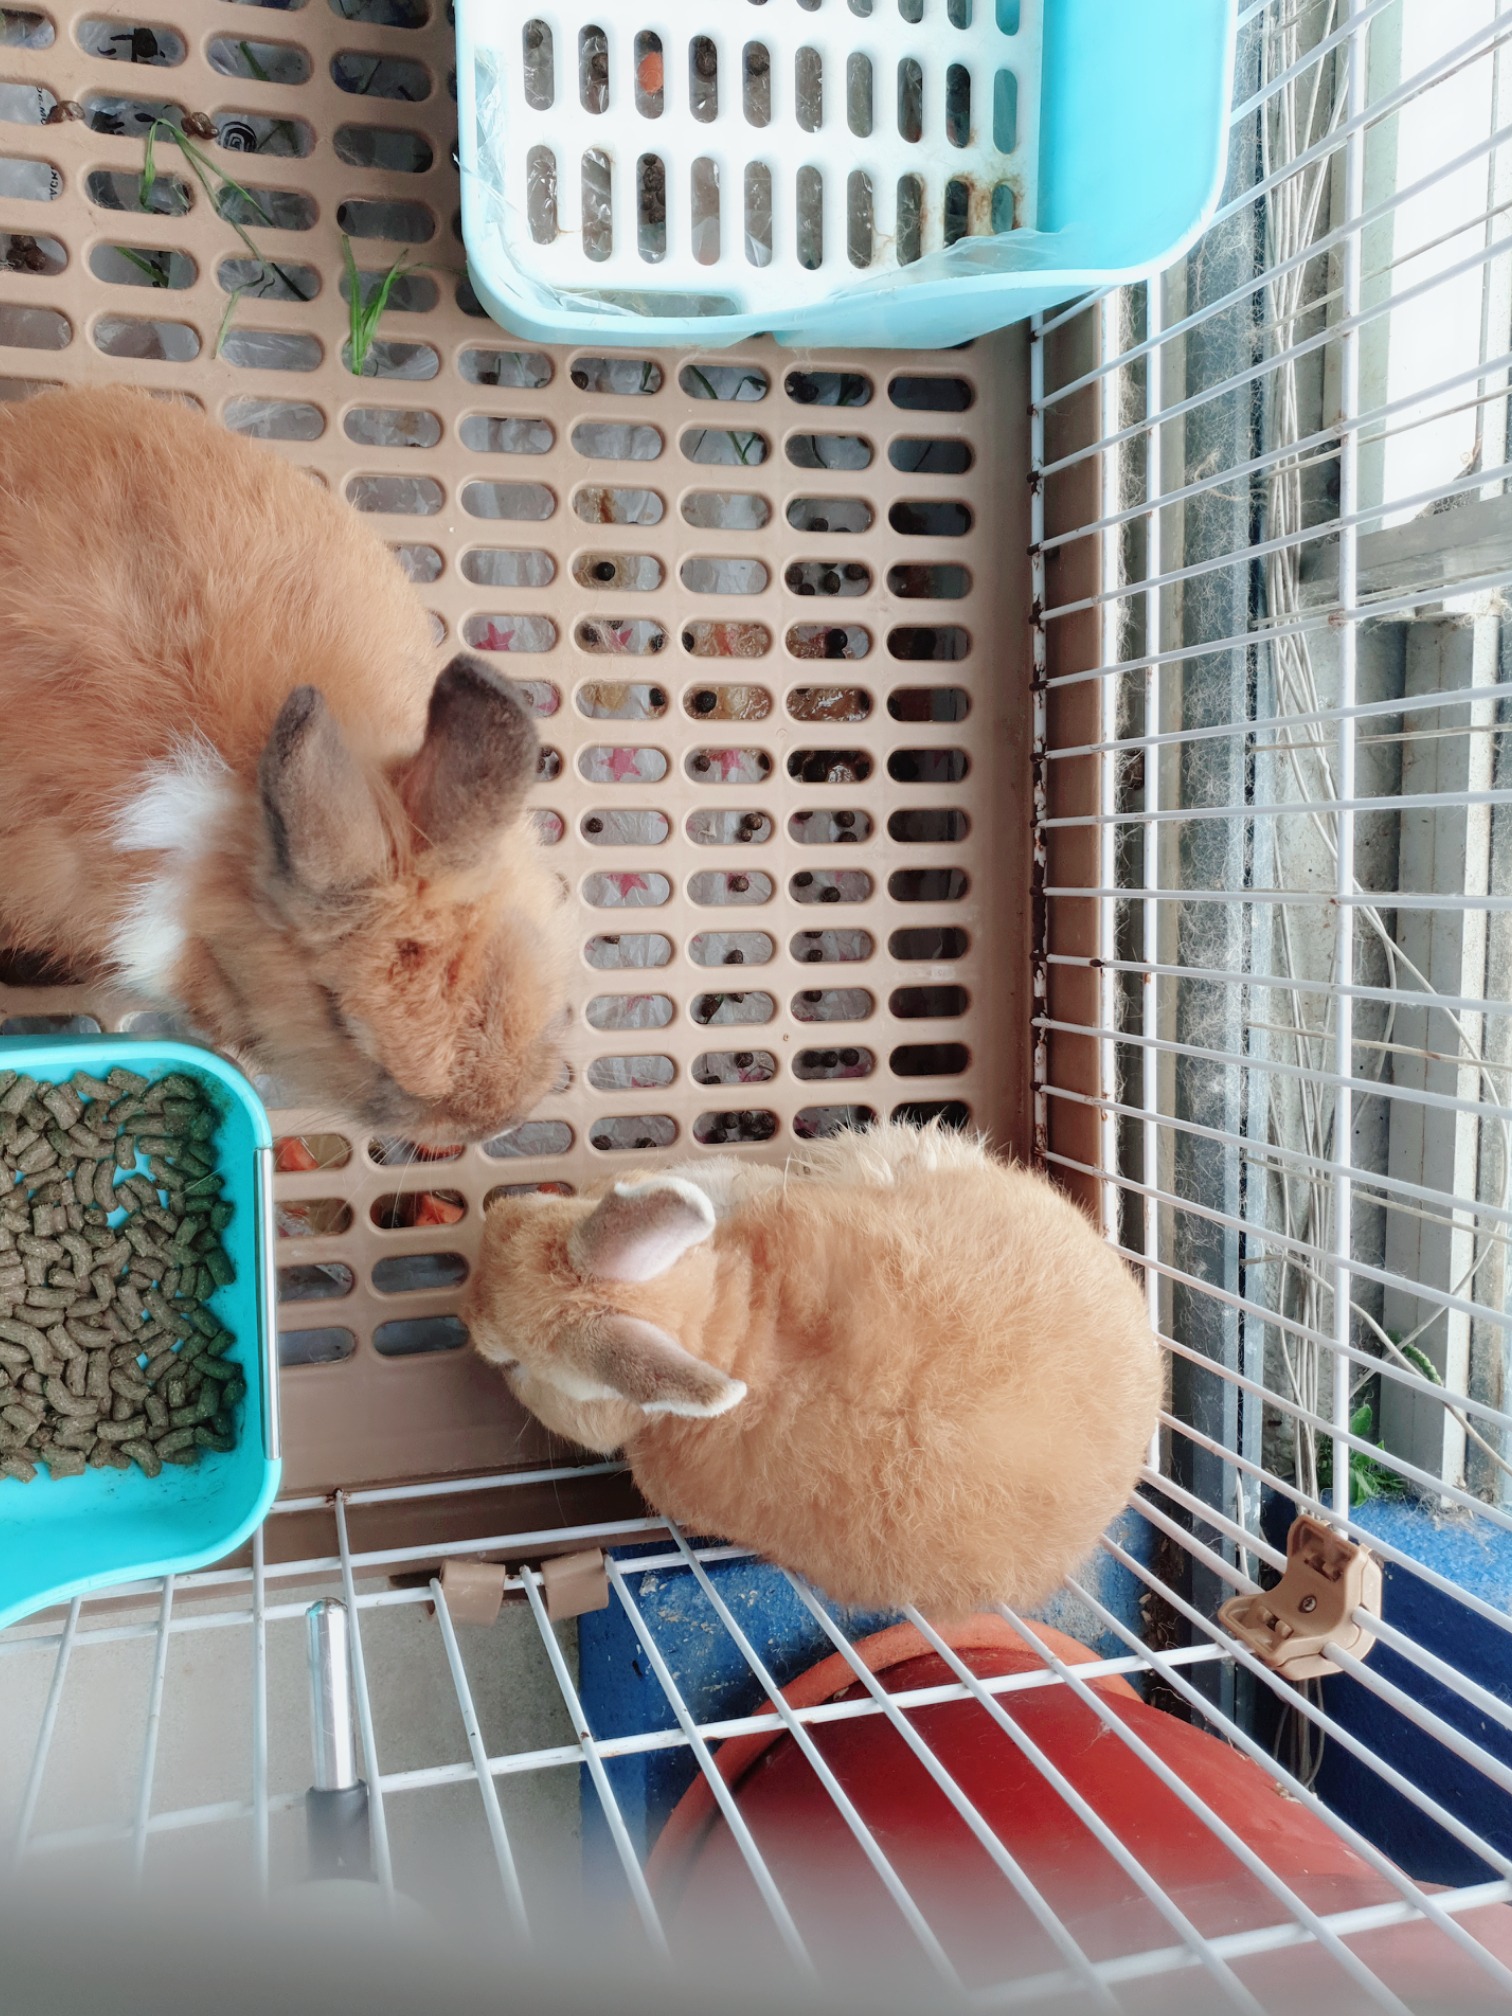 出售两只小兔子 一公一母 - 宠物交易 -轻微使用痕迹 - 爱心宠物 新加坡狮城论坛